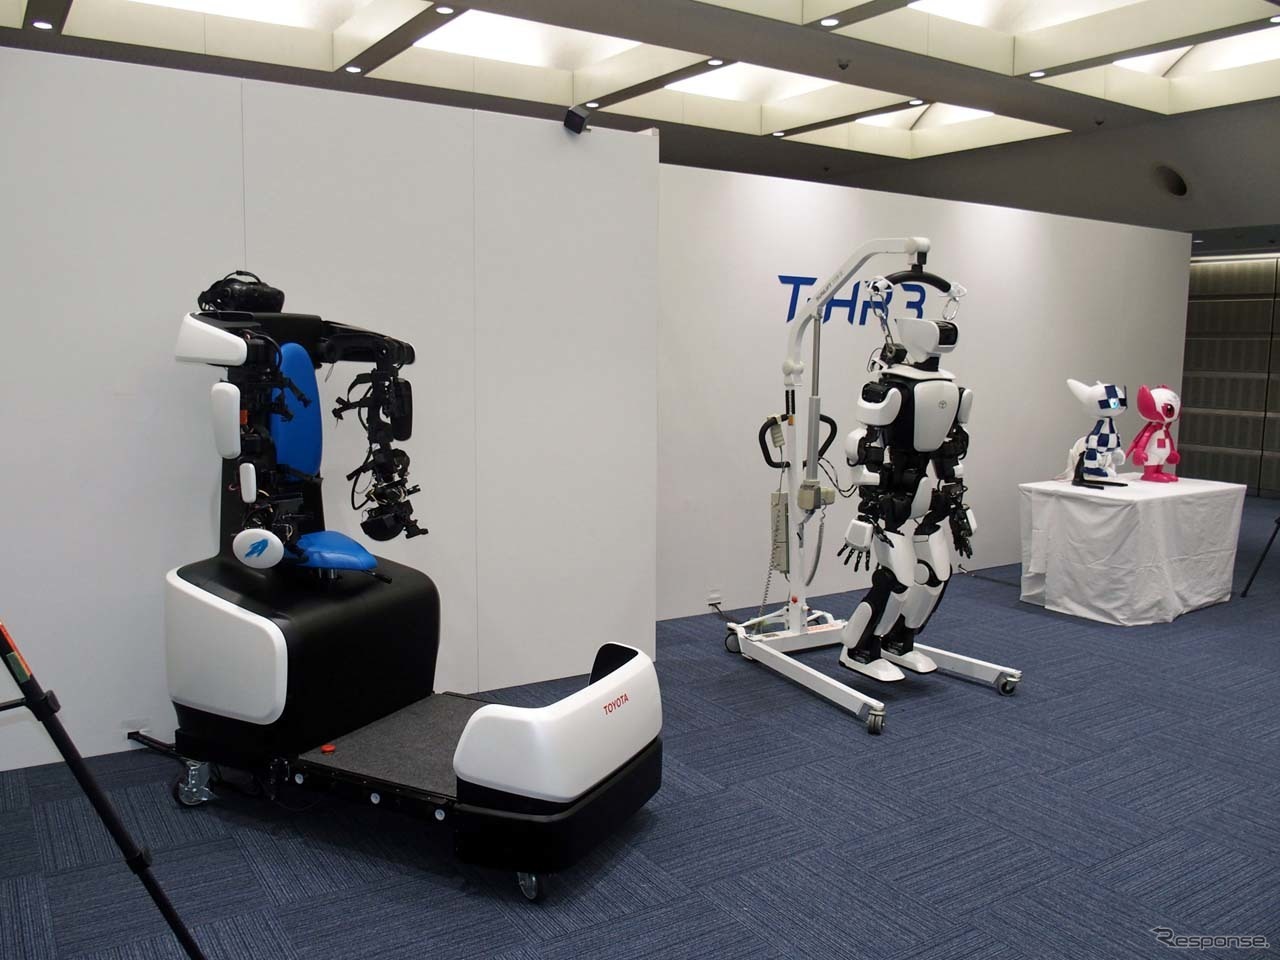 ヒューマノイドロボット「T-HR3」(手前）とマスコットロボット「ミライトワ」の連携も可能